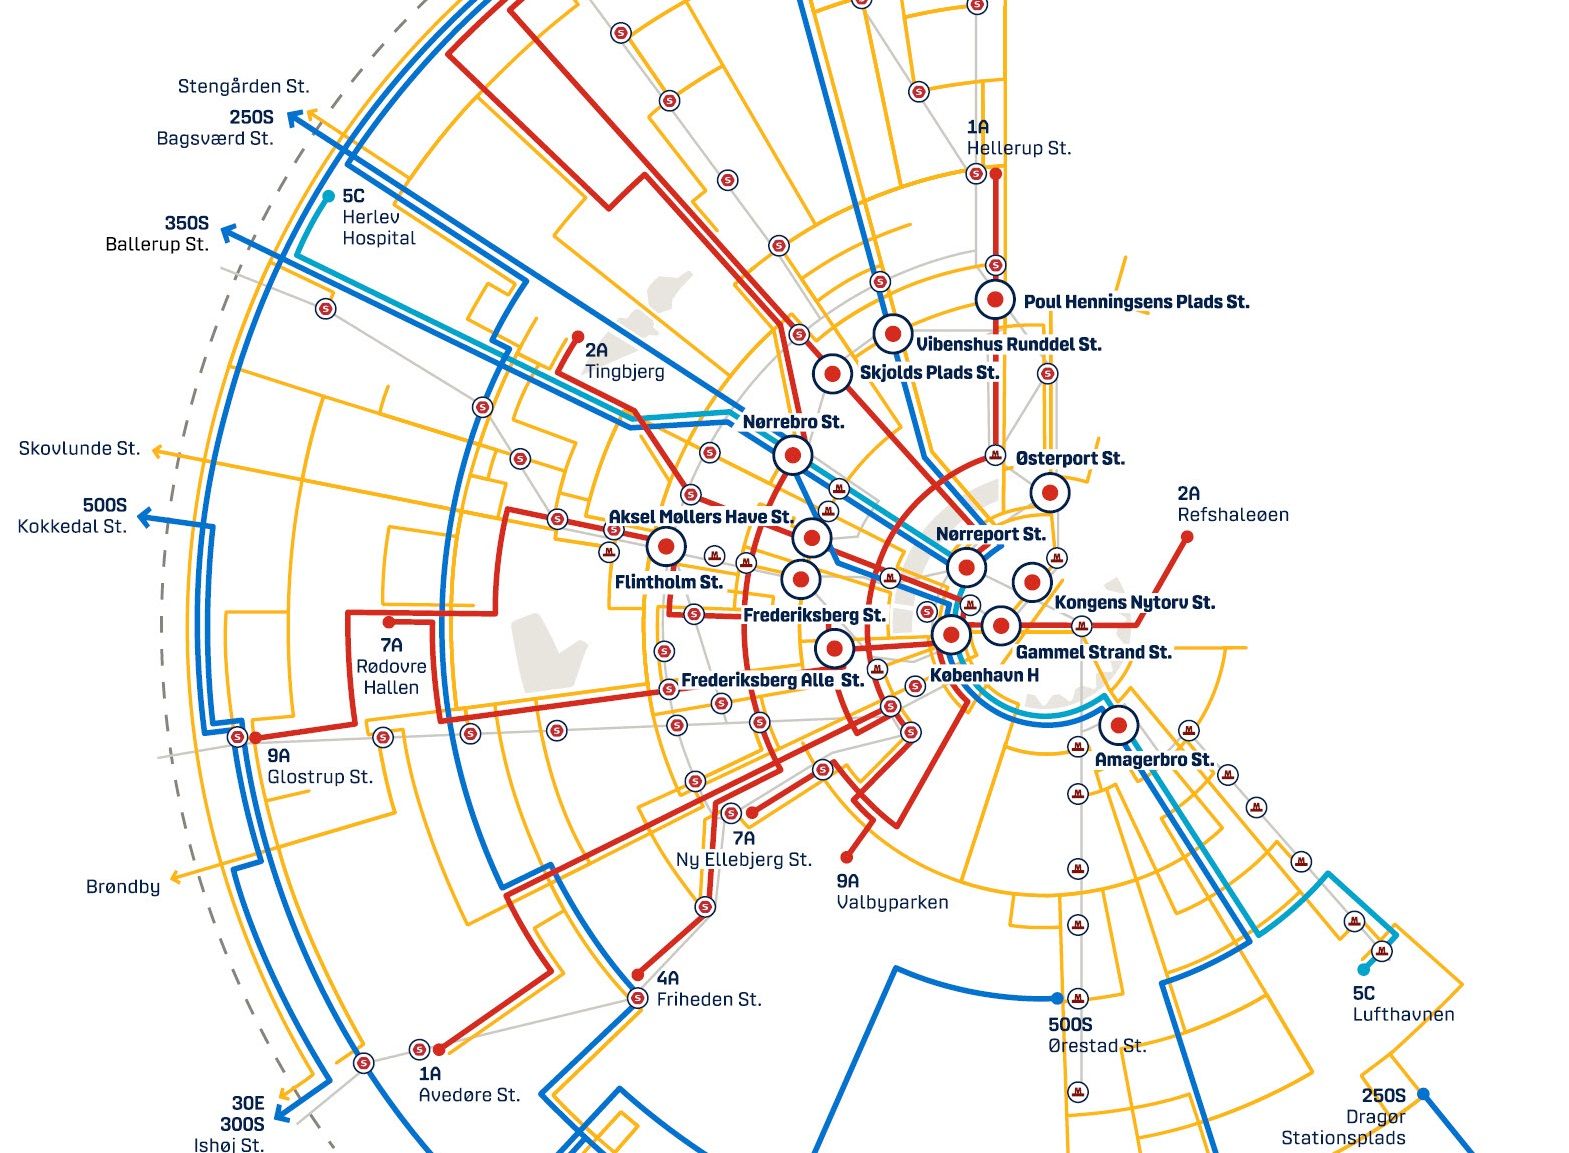 Copenhagen’s public transport landscape facing dramatic change